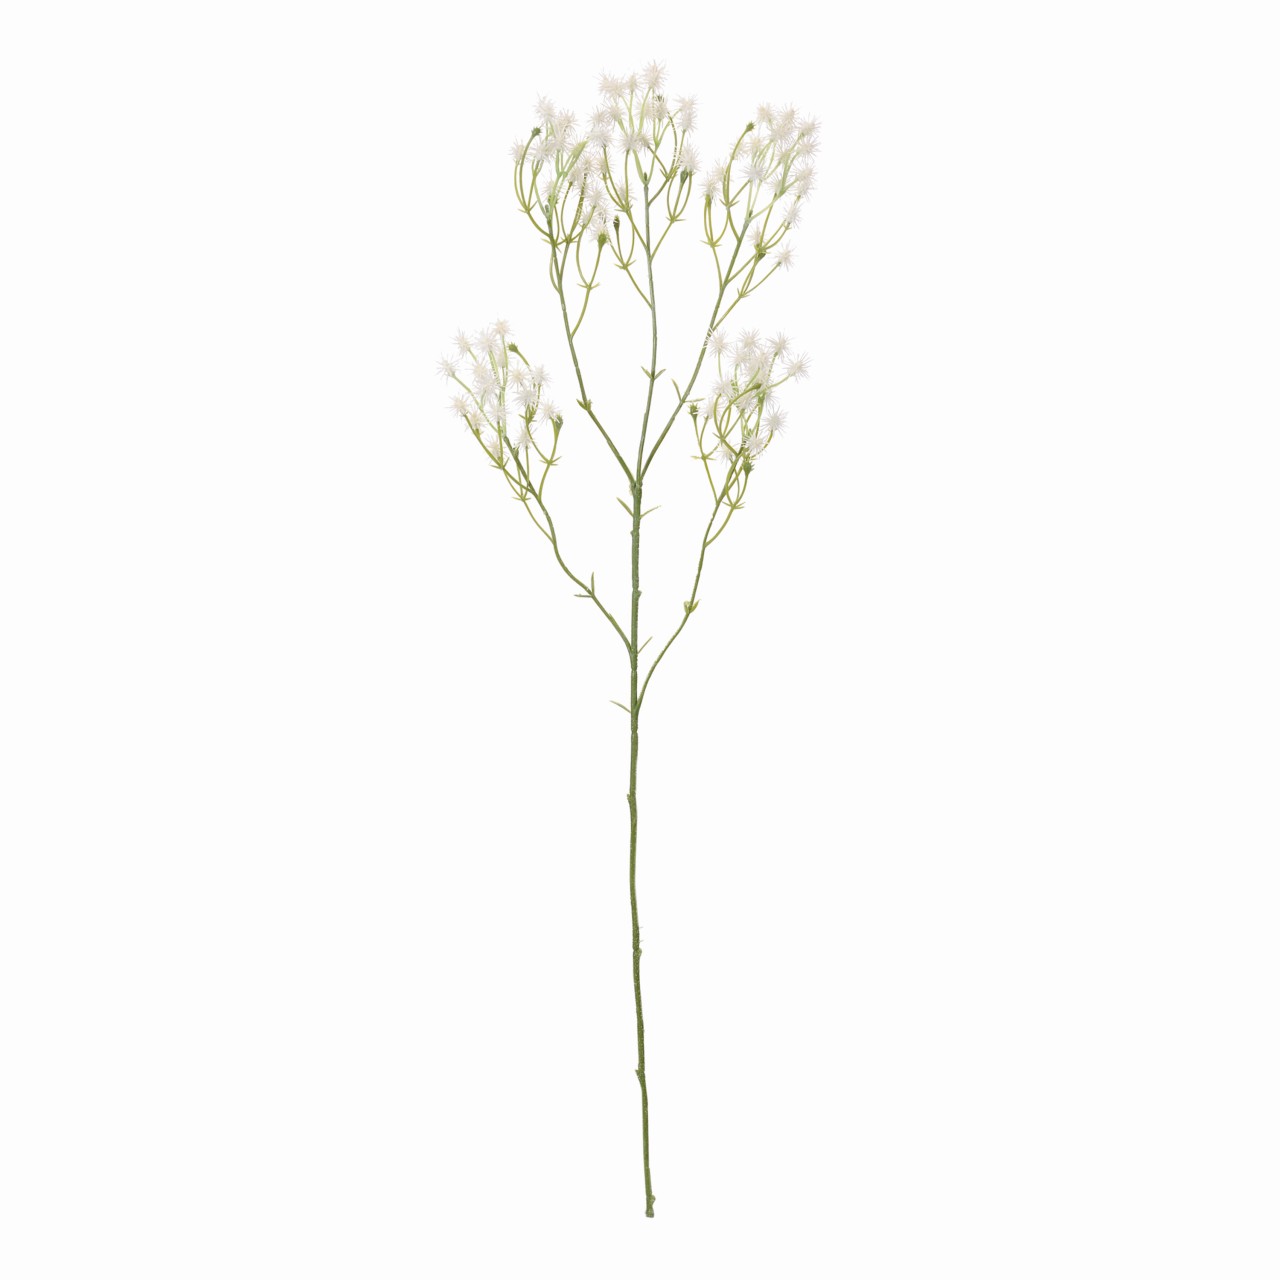 マイフラ 通販 Magiq ポンポンフラワースプレー ホワイト アーティフィシャルフラワー 造花 Fm 001 小花 ホワイト Magiq アーティフィシャルフラワー 造花 全国にmagiq 花器 花資材などをお届けします